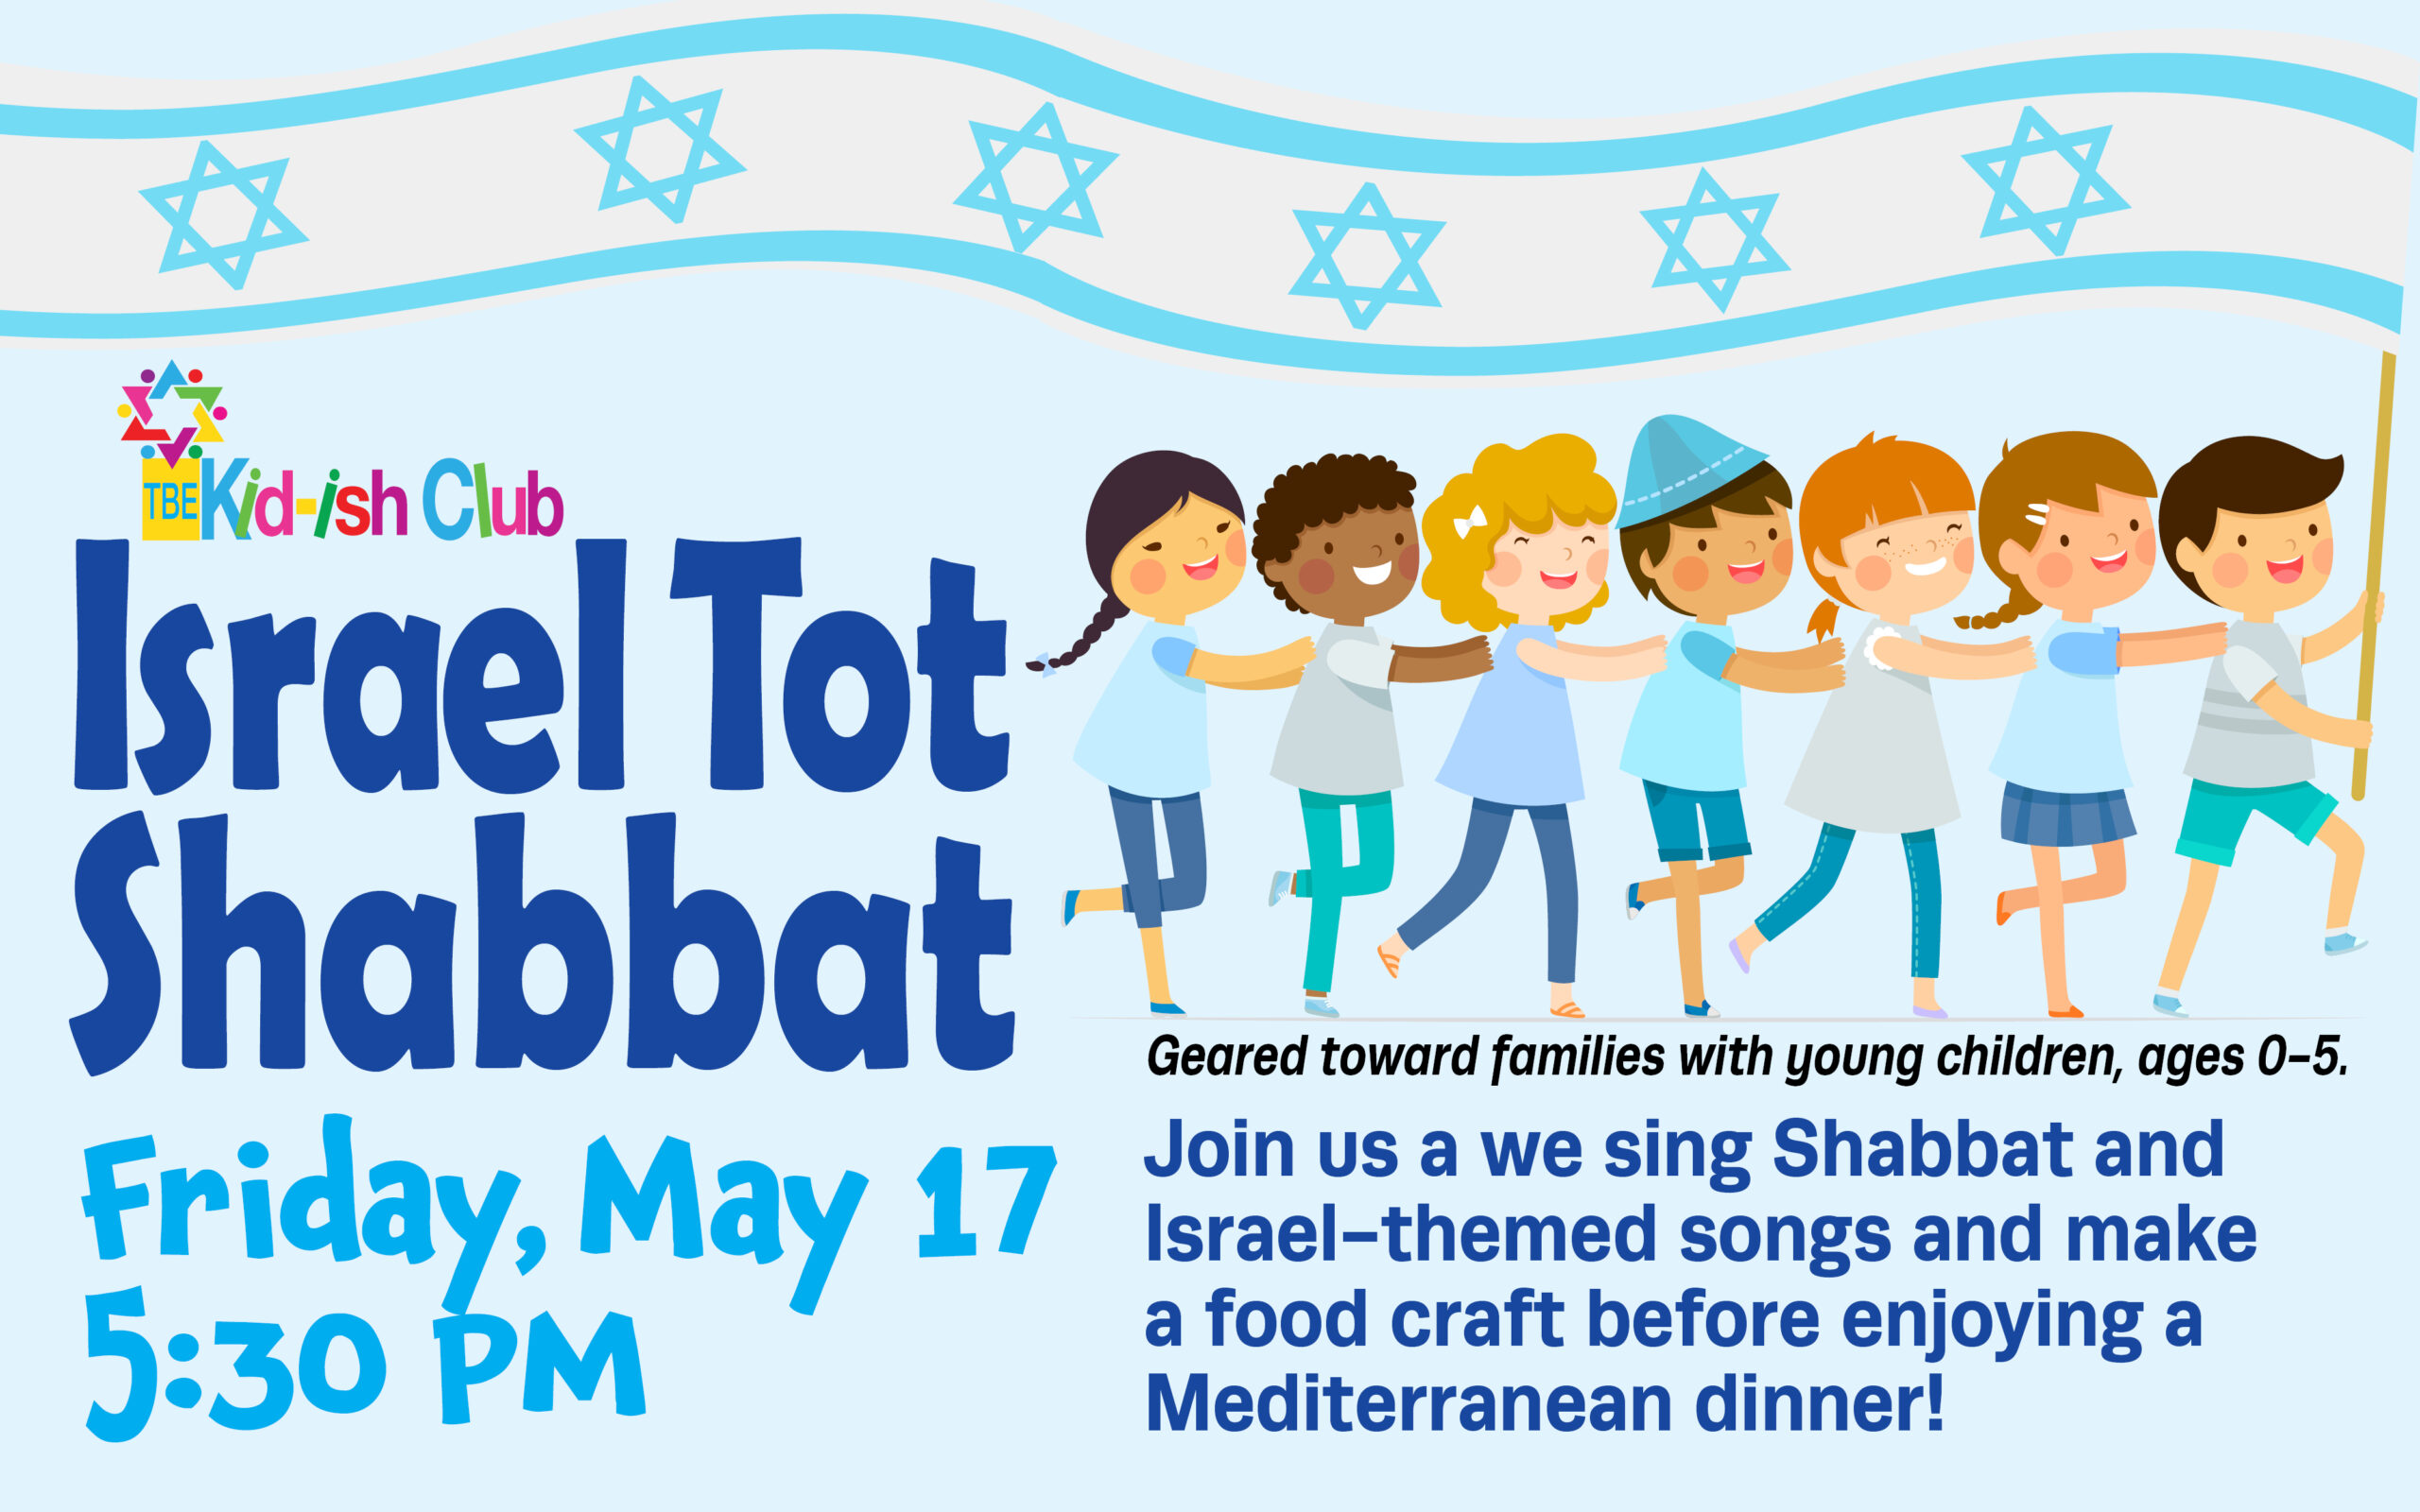 Kid-ish Club Israel Tot Shabbat